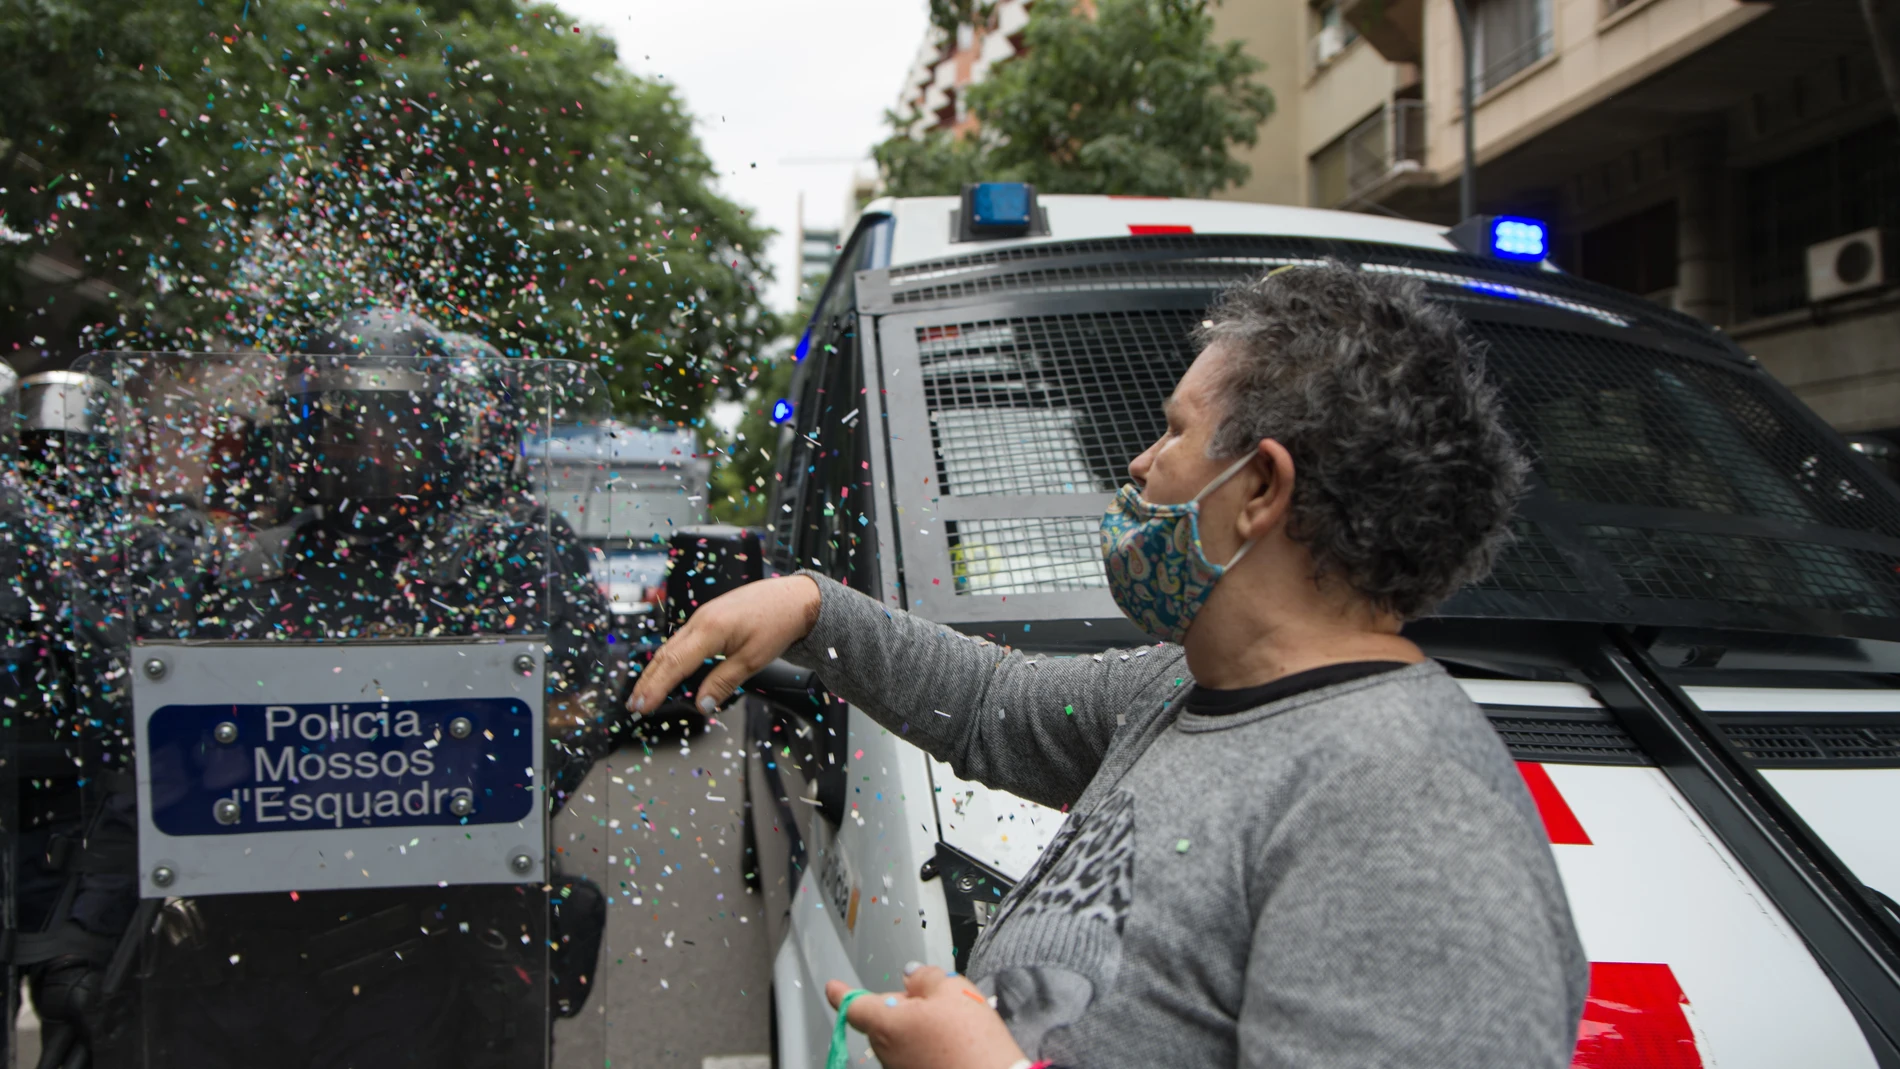 Una mujer, perteneciente a activistas vinculados a sindicatos de la vivienda de Barcelona, frente a los Mossos d'Esquadra en una ocupación de la sede de ERC en la calle Calàbria en protesta por el desahucio del bloque Llavors este martes por la mañana, a 25 de mayo de 2021, en Barcelona, Catalunya (España). En el desahucio han participado agentes antidisturbios de los Mossos d'Esquadra, que también se han trasladado a la sede de ERC. En un comunicado, el Sindicat de Barri de Poble Sec ha lamentado que la intervención de los antidisturbios supone "un incumplimiento del acuerdo con la CUP" del nuevo presidente de la Generalitat, para retirar a los antidisturbios de los desahucios. Los activistas en la sede aseguran que "no se marcharán" hasta que no cese la intervención policial en el bloque Llavors, donde se ha producido una concentración para impedir el paso de la comitiva judicial que debe llevar a cabo el desahucio.25 MAYO 2021;BARCEL